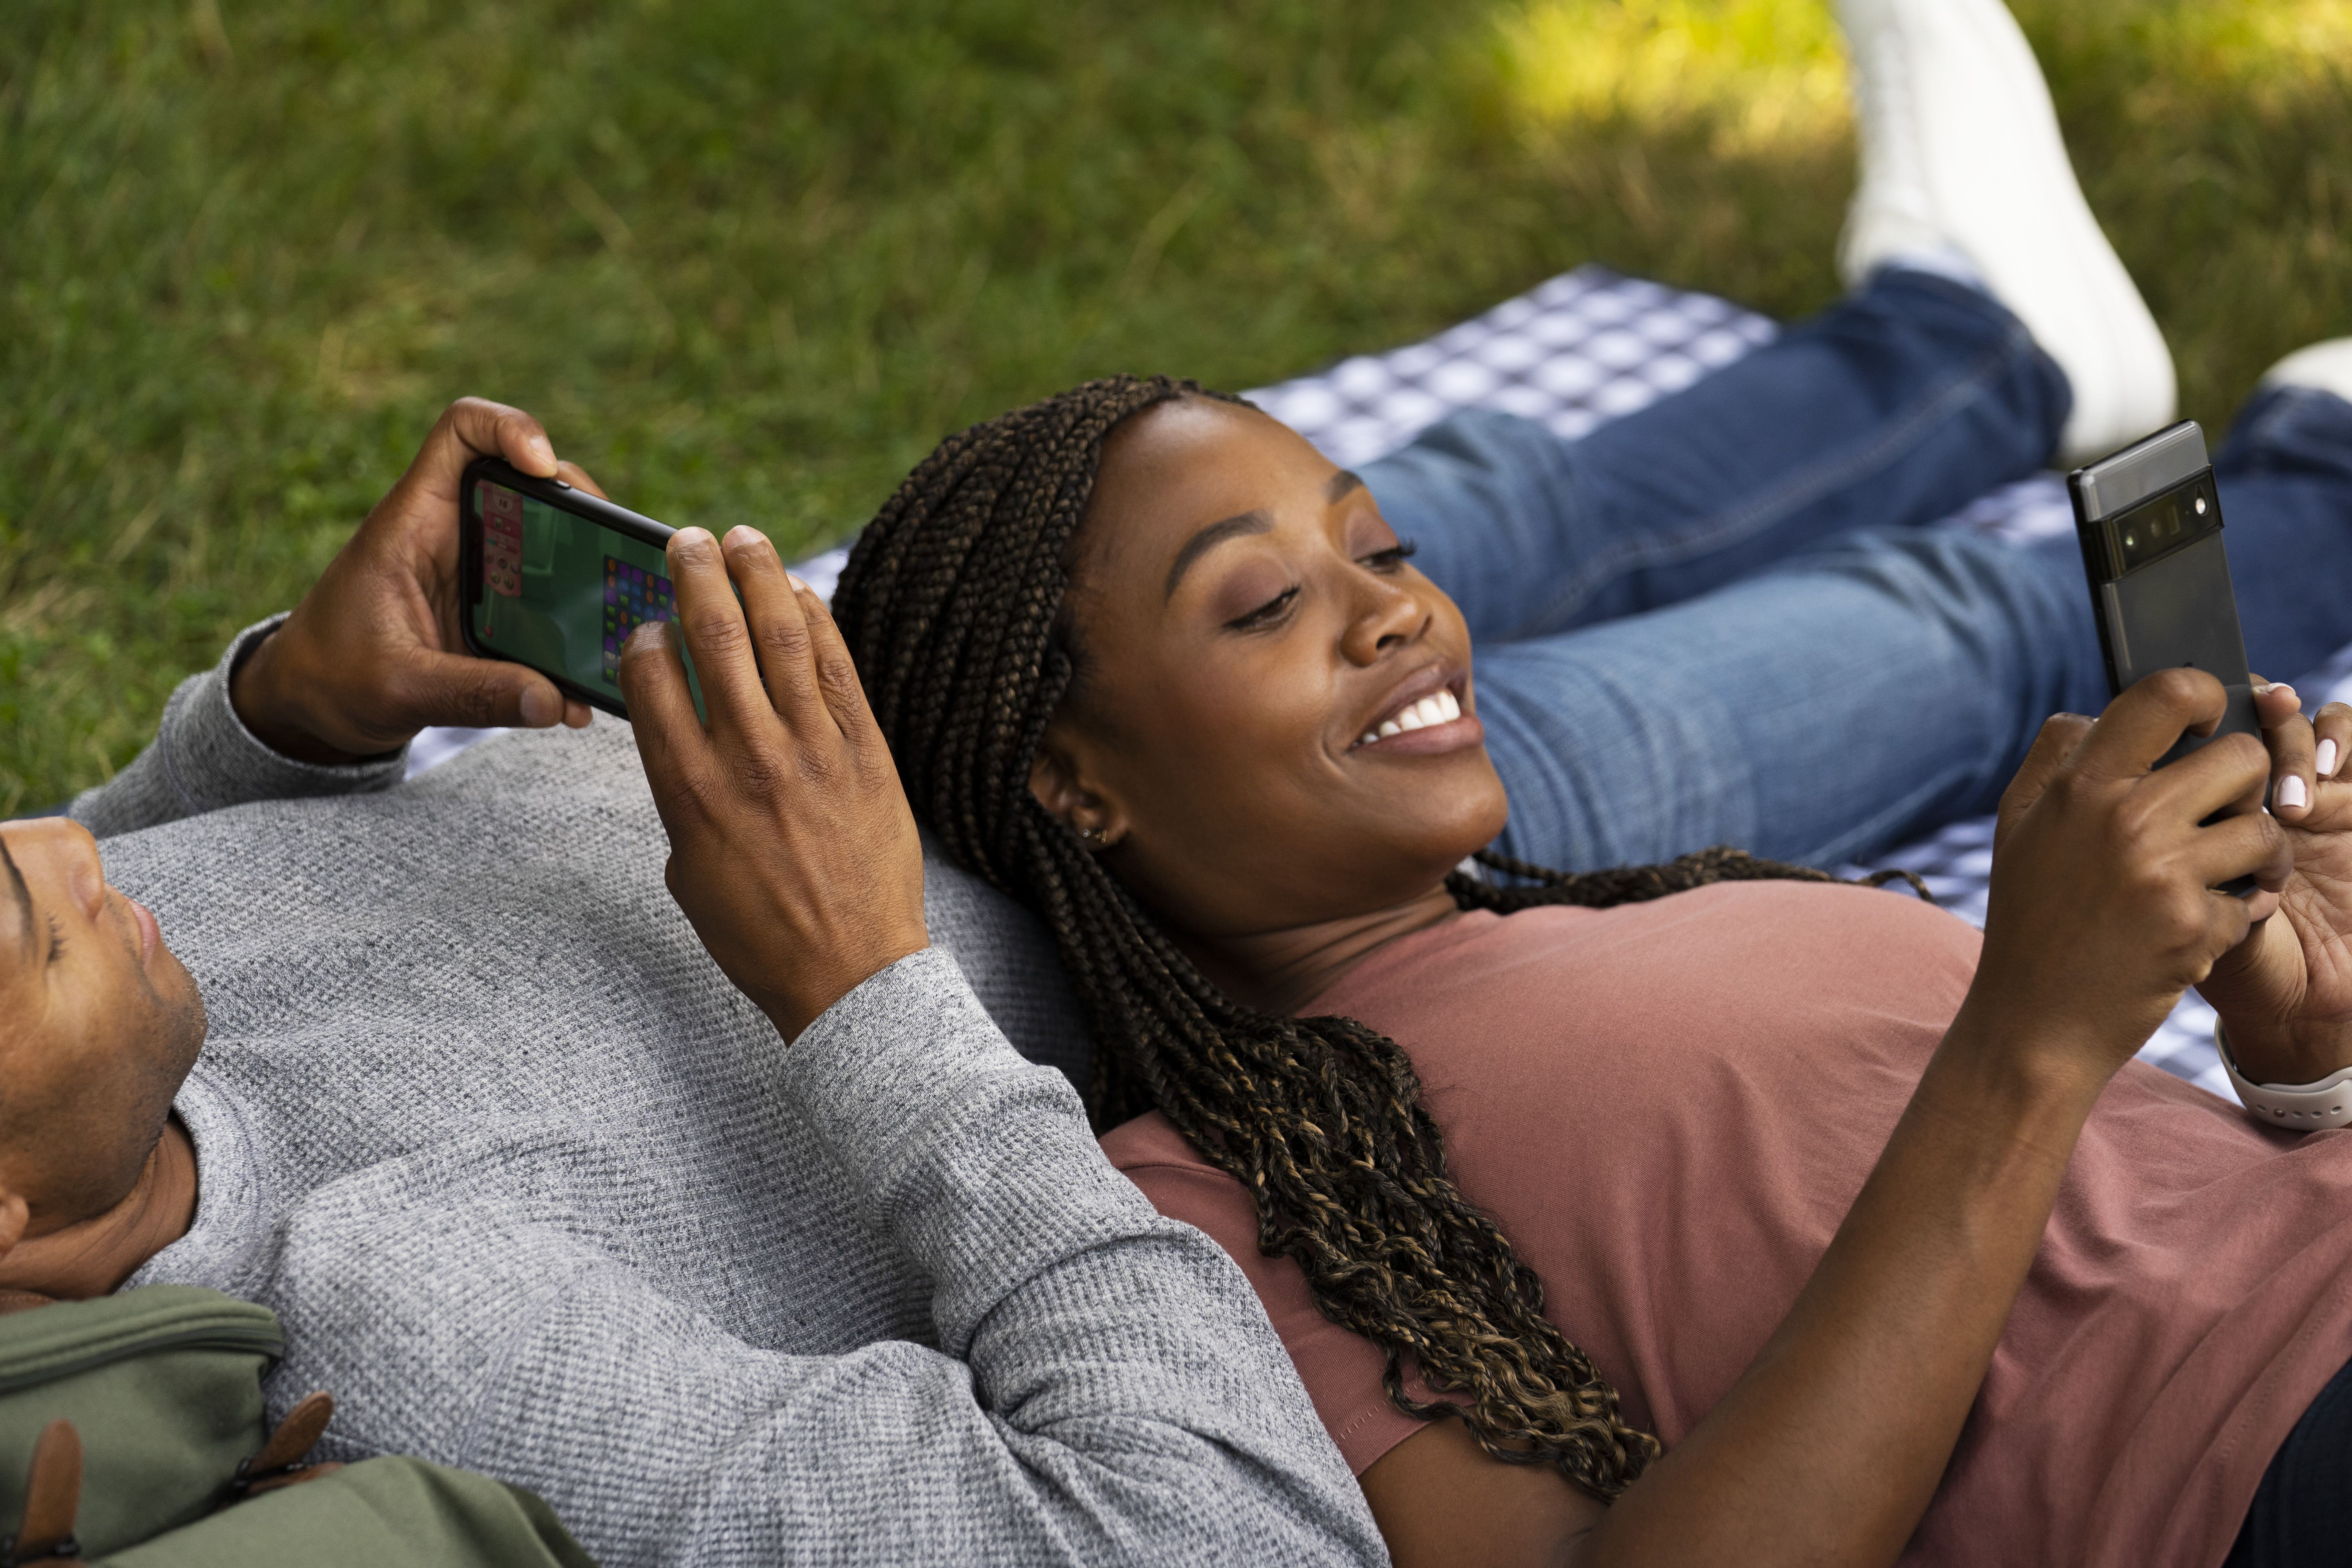 Una coppia felice che gioca su mobile all'aria aperta.